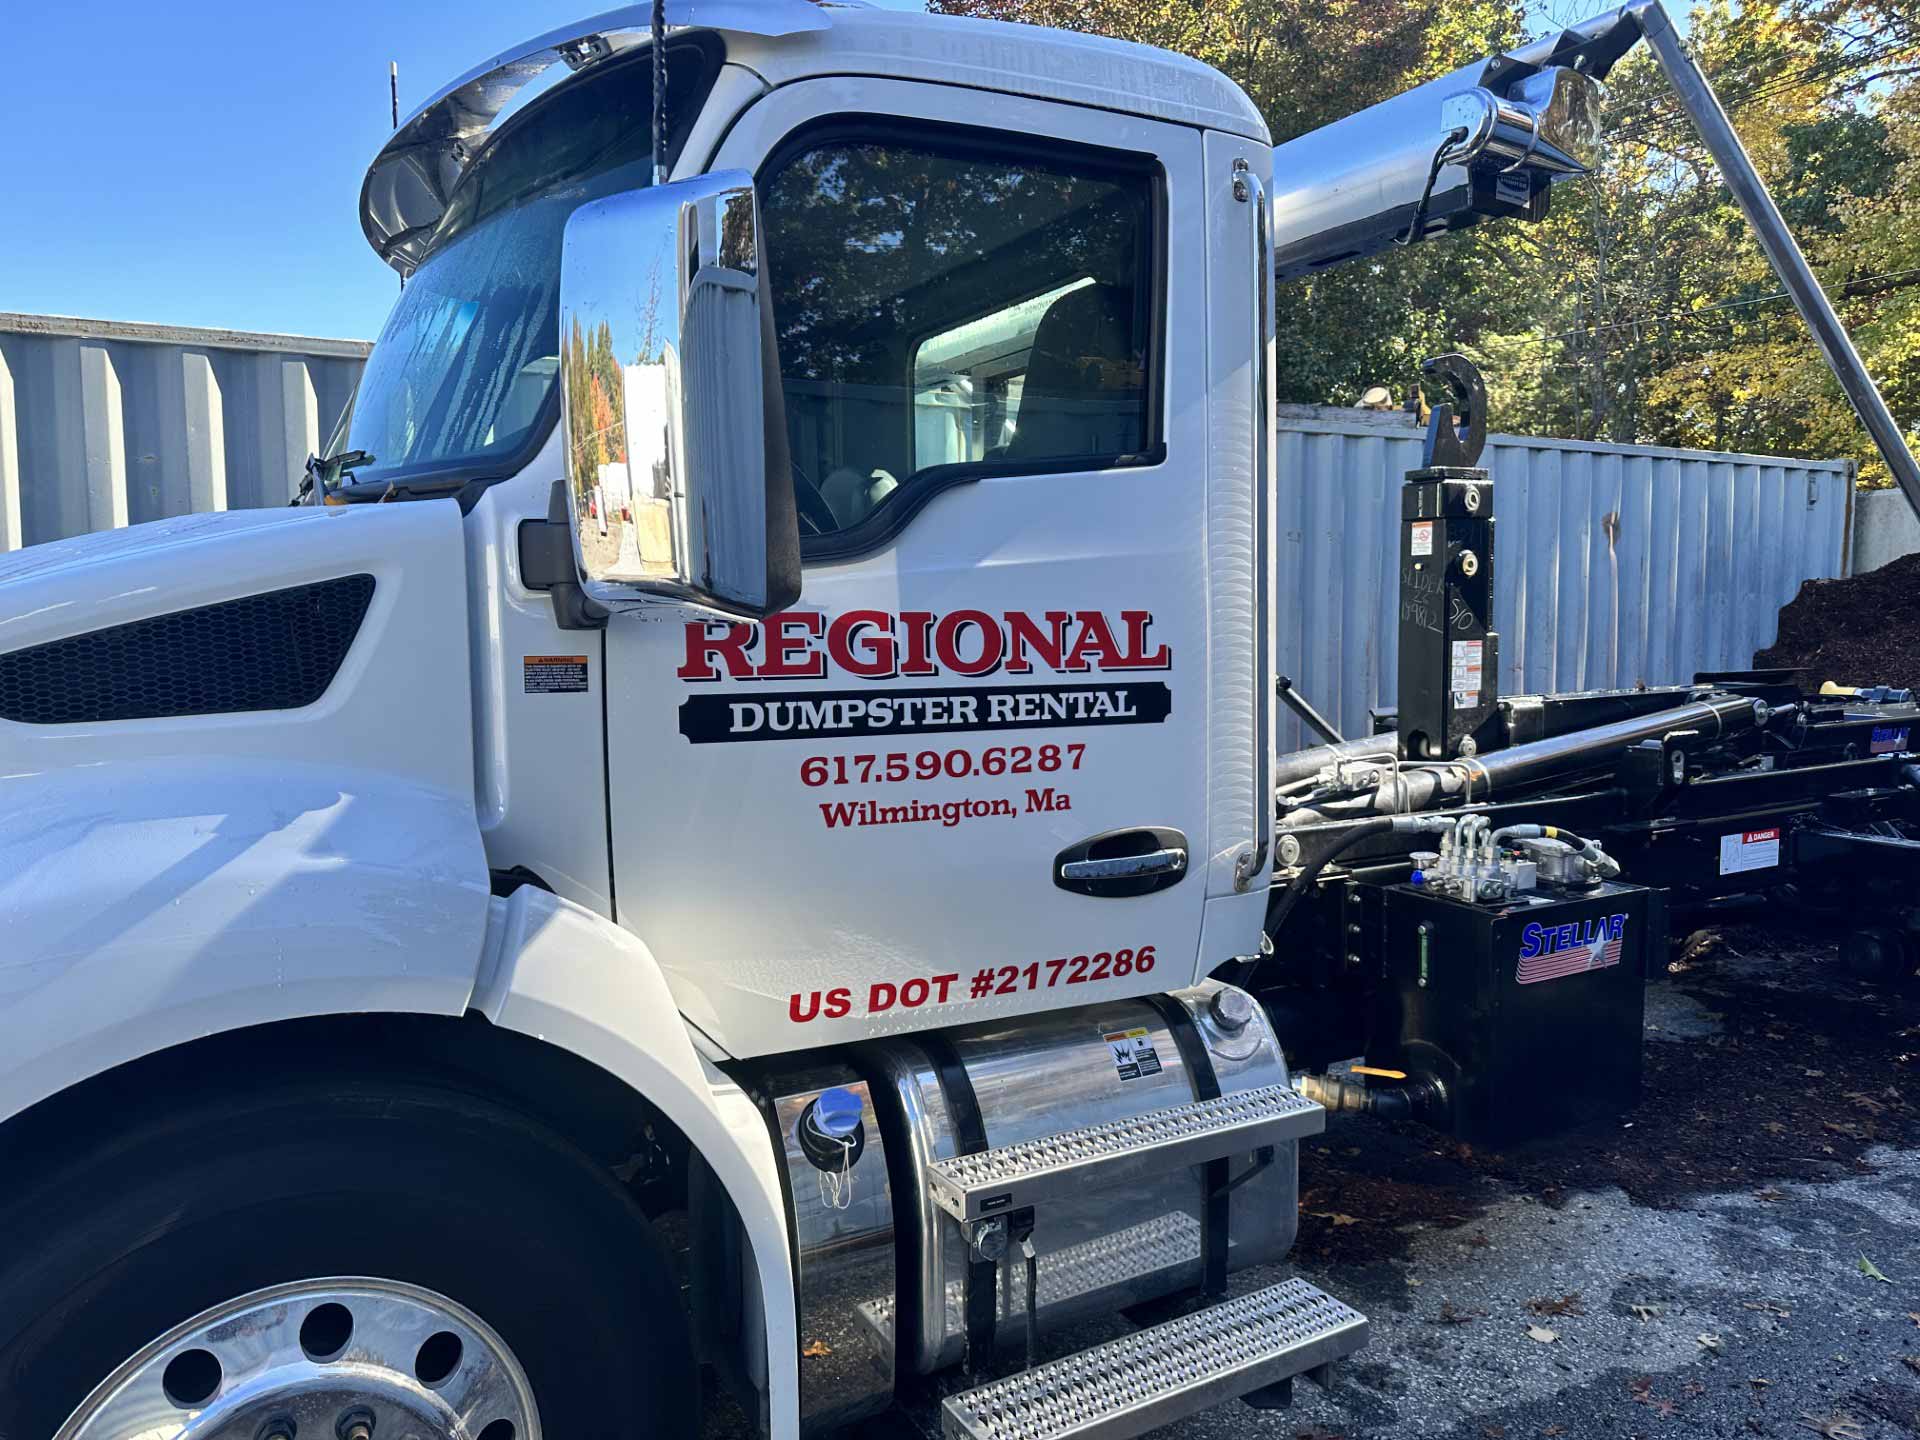 Regional Dumpster Rental truck